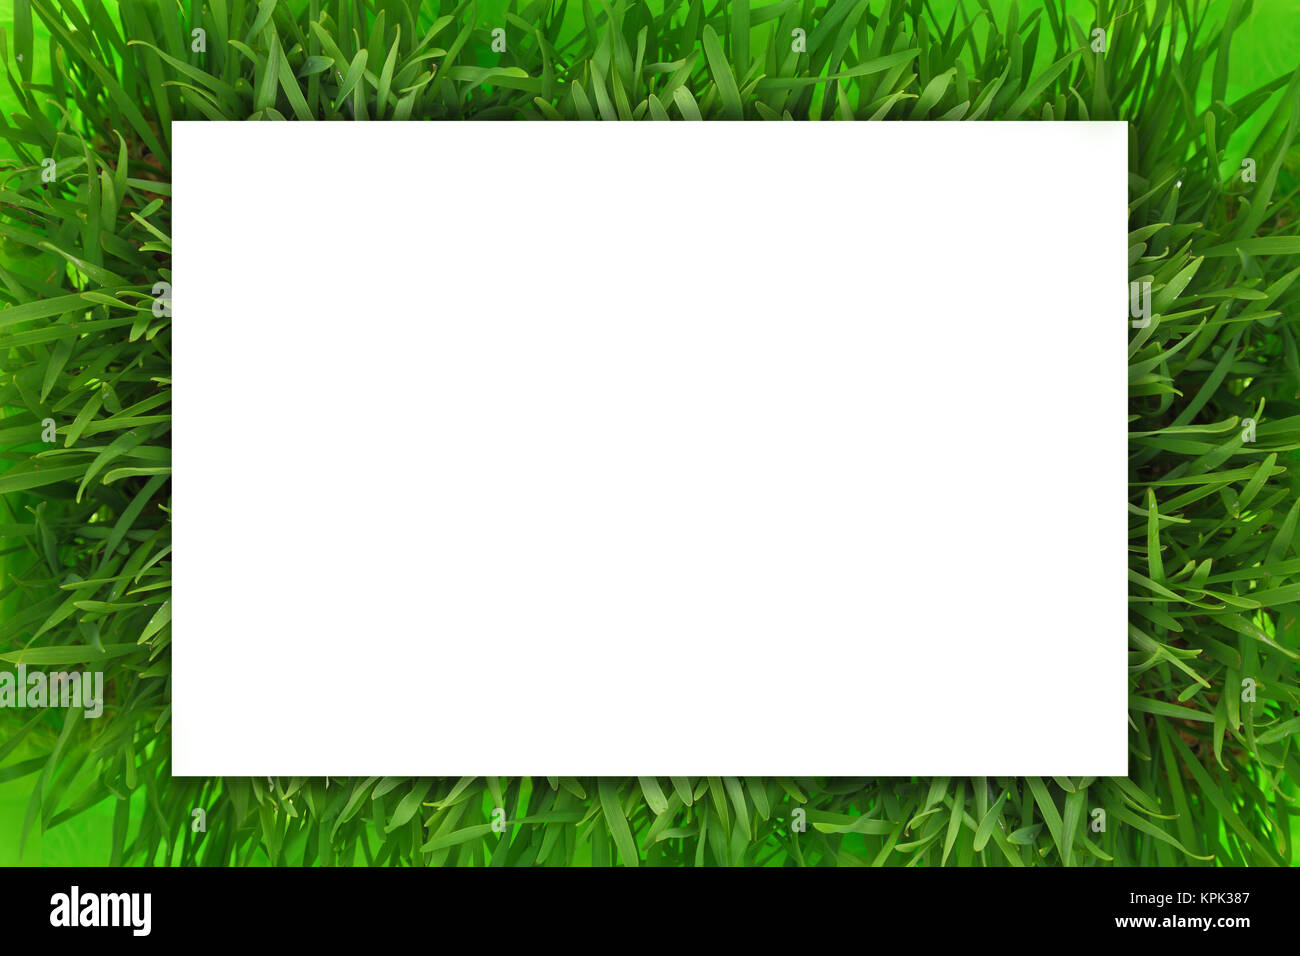 Bannière horizontale blanche sur l'herbe verte Banque D'Images